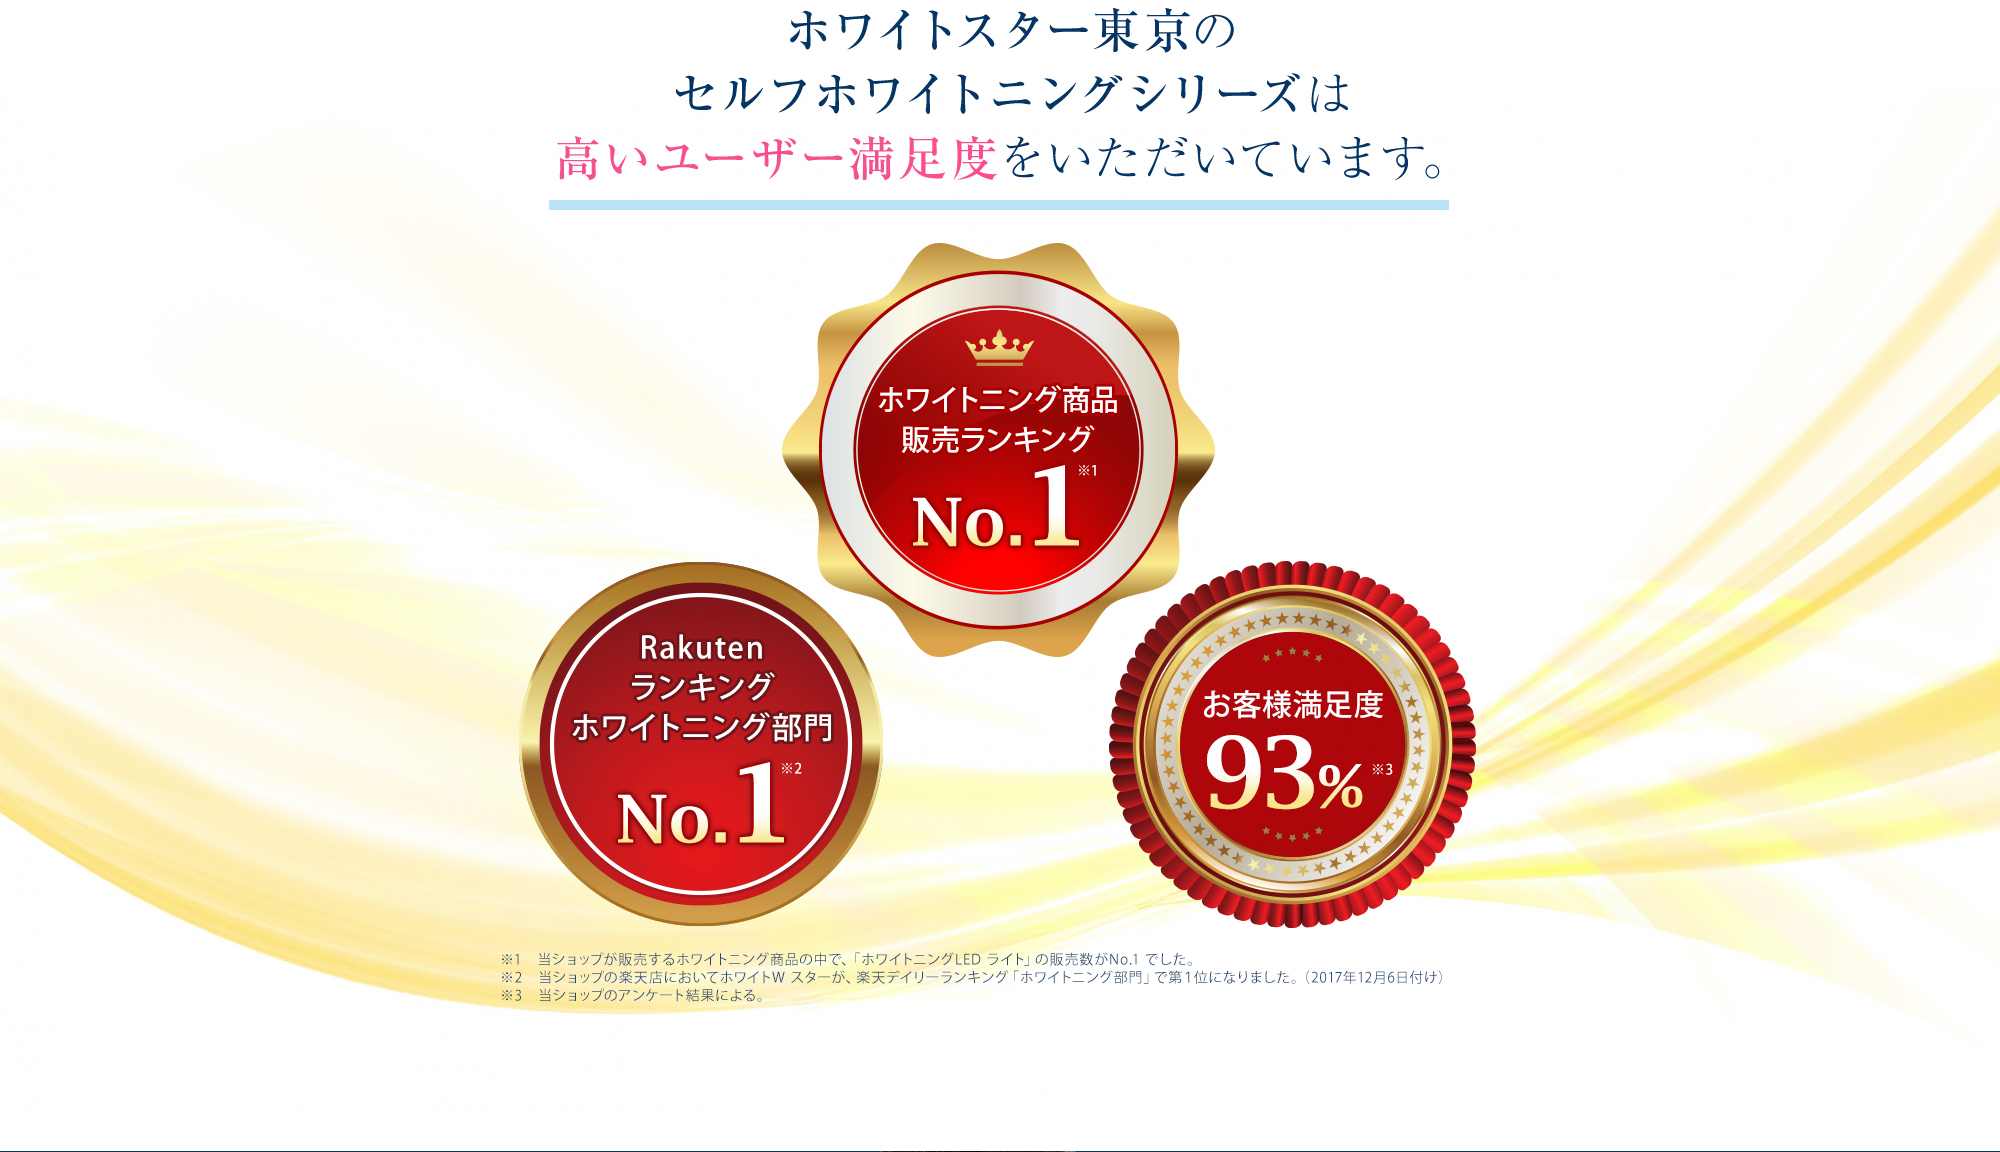 ホワイトスター東京のセルフホワイトニングシリーズは高いユーザー満足度をいただいています。